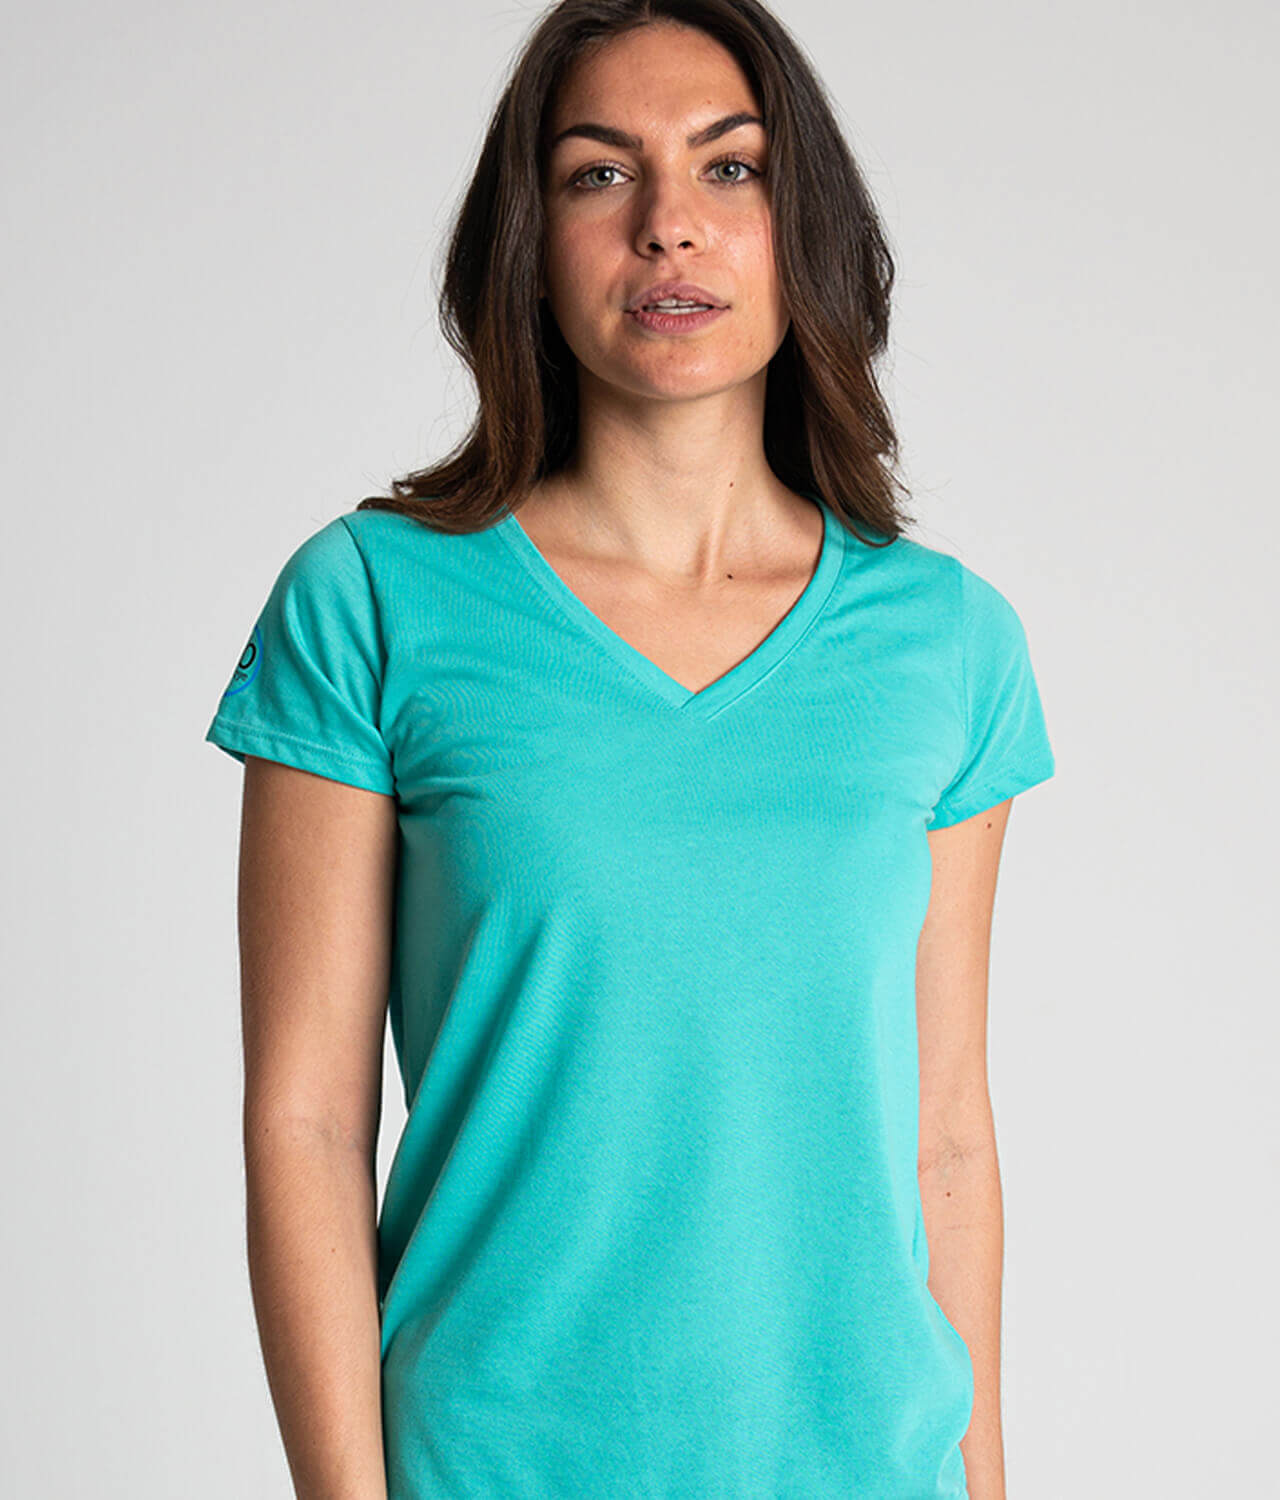 Camiseta antimosquitos mujer cuello pico turquesa 1